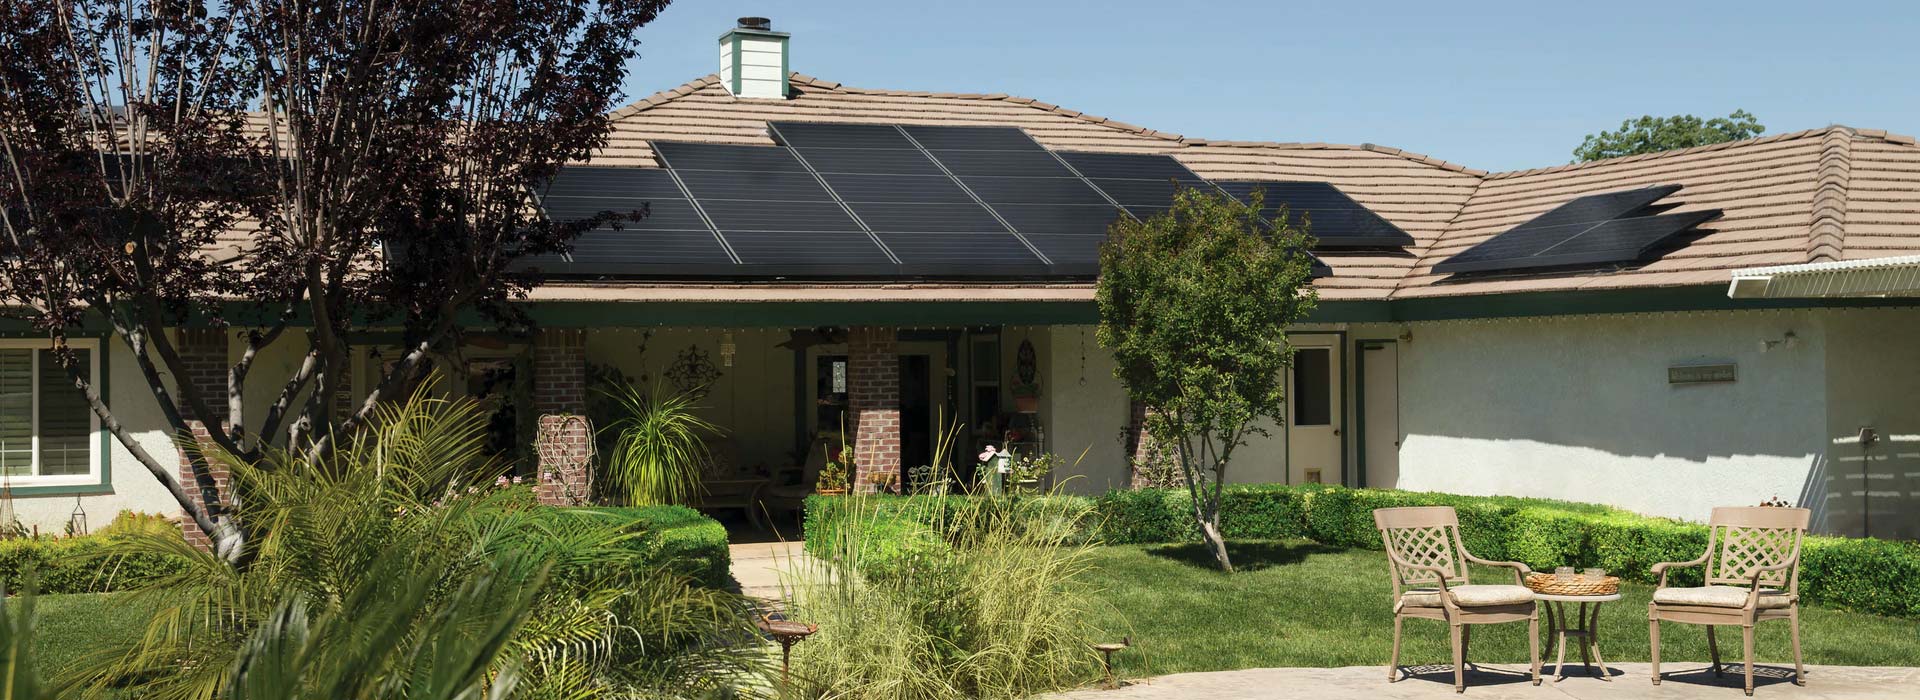 fotovoltaico-domestico-impianto-solar-panel-clima-service-di-fabbian-matteo